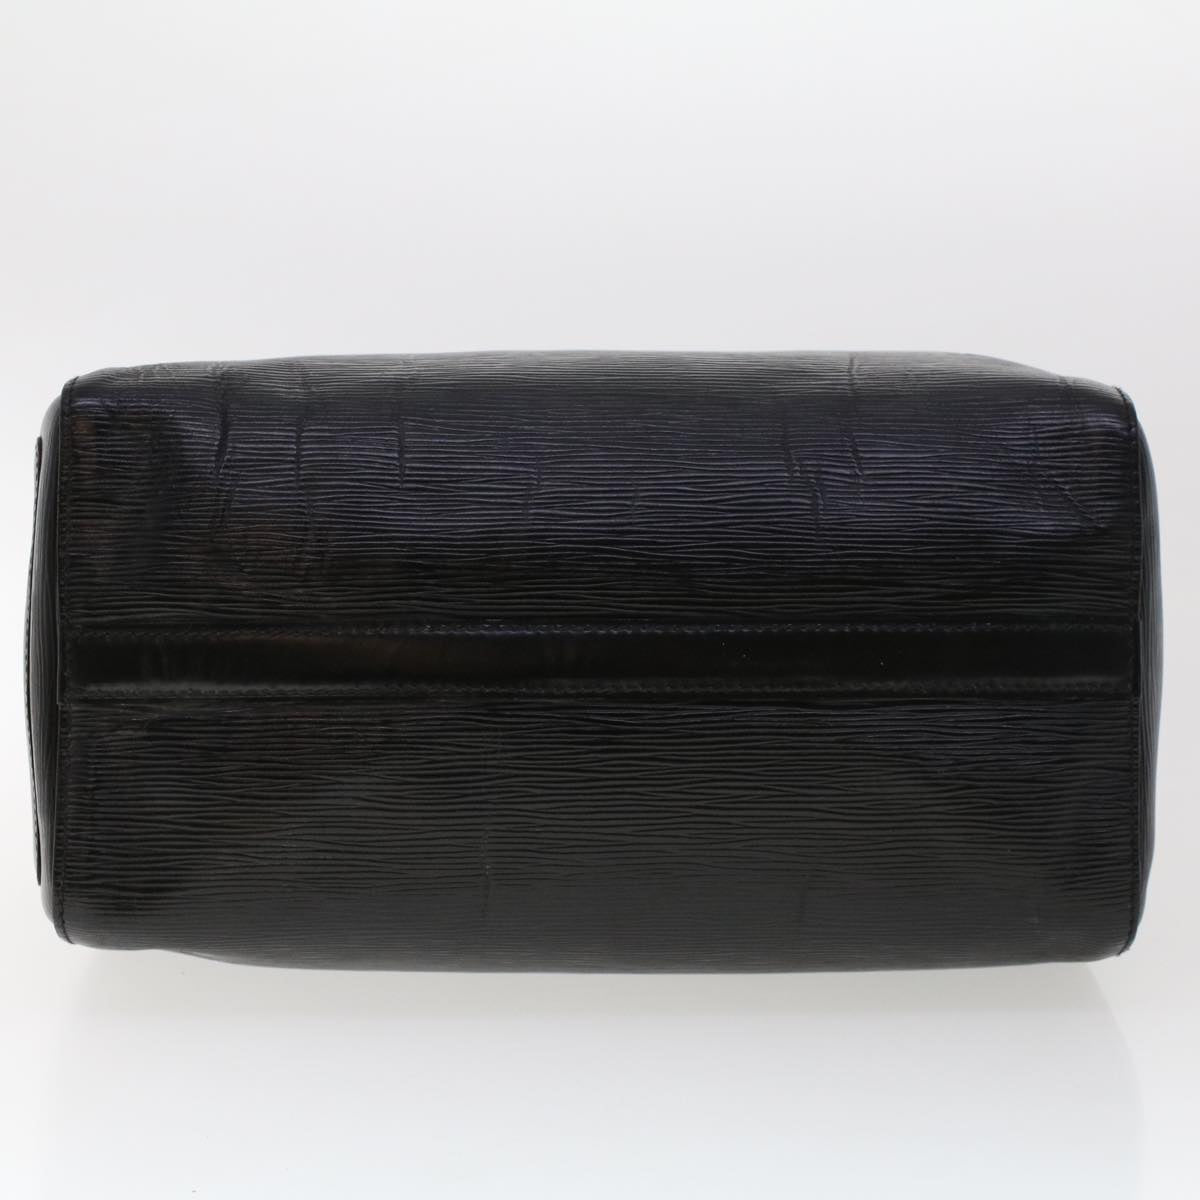 Louis Vuitton Epi Leather Speedy 30 Handbag